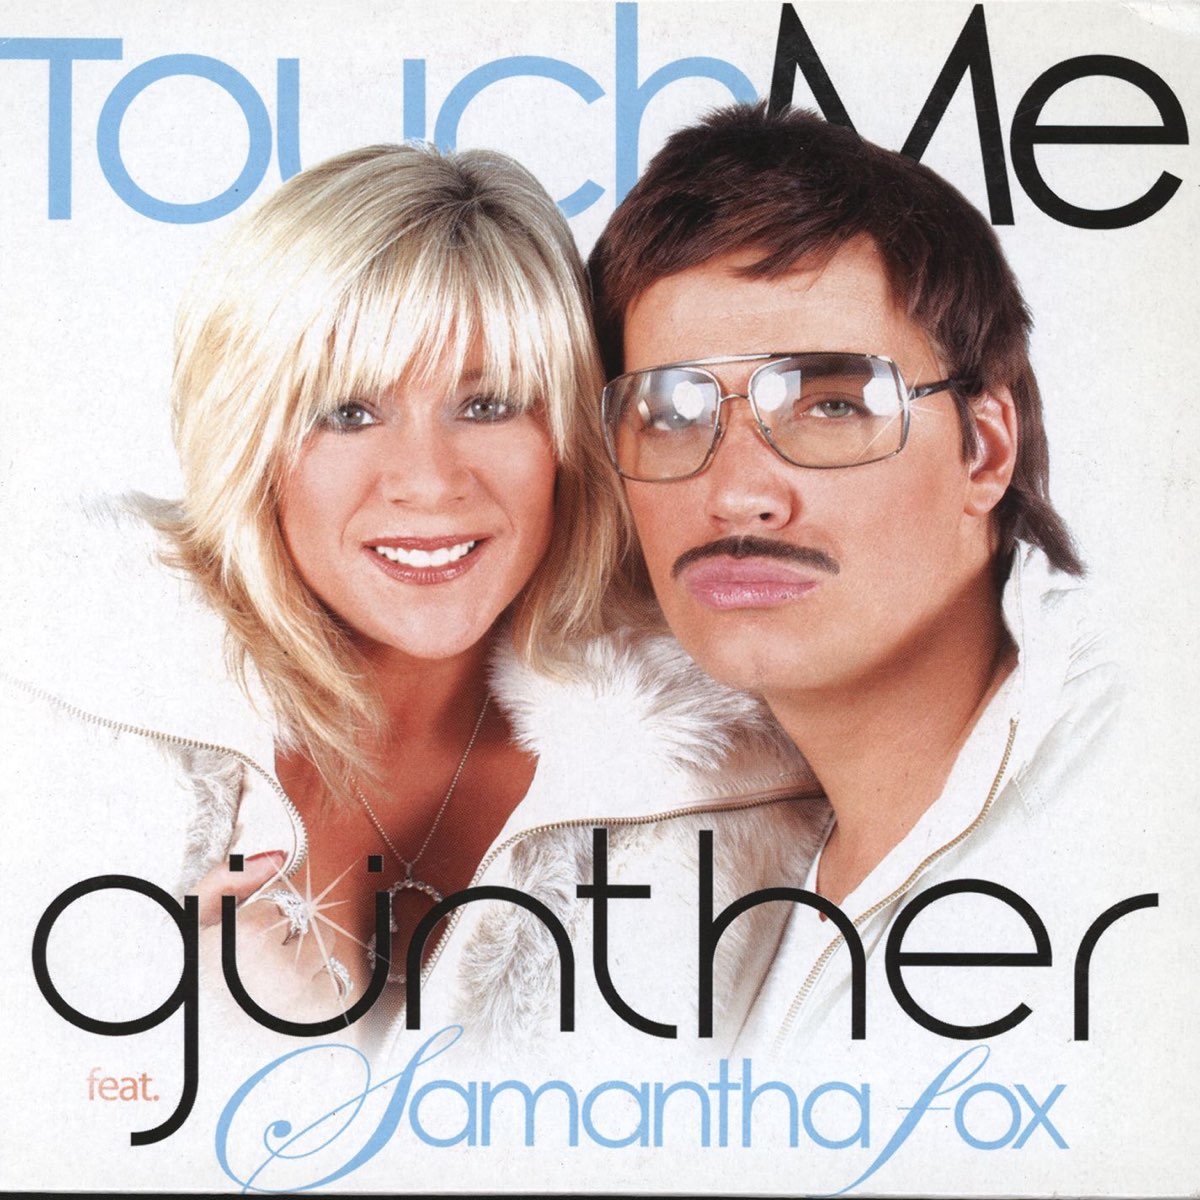 Feat fox. Gunther Samantha Fox. Samantha Fox – Touch me. Samantha Fox Gunther Touch. Gunther feat. Samantha Fox - Touch me.